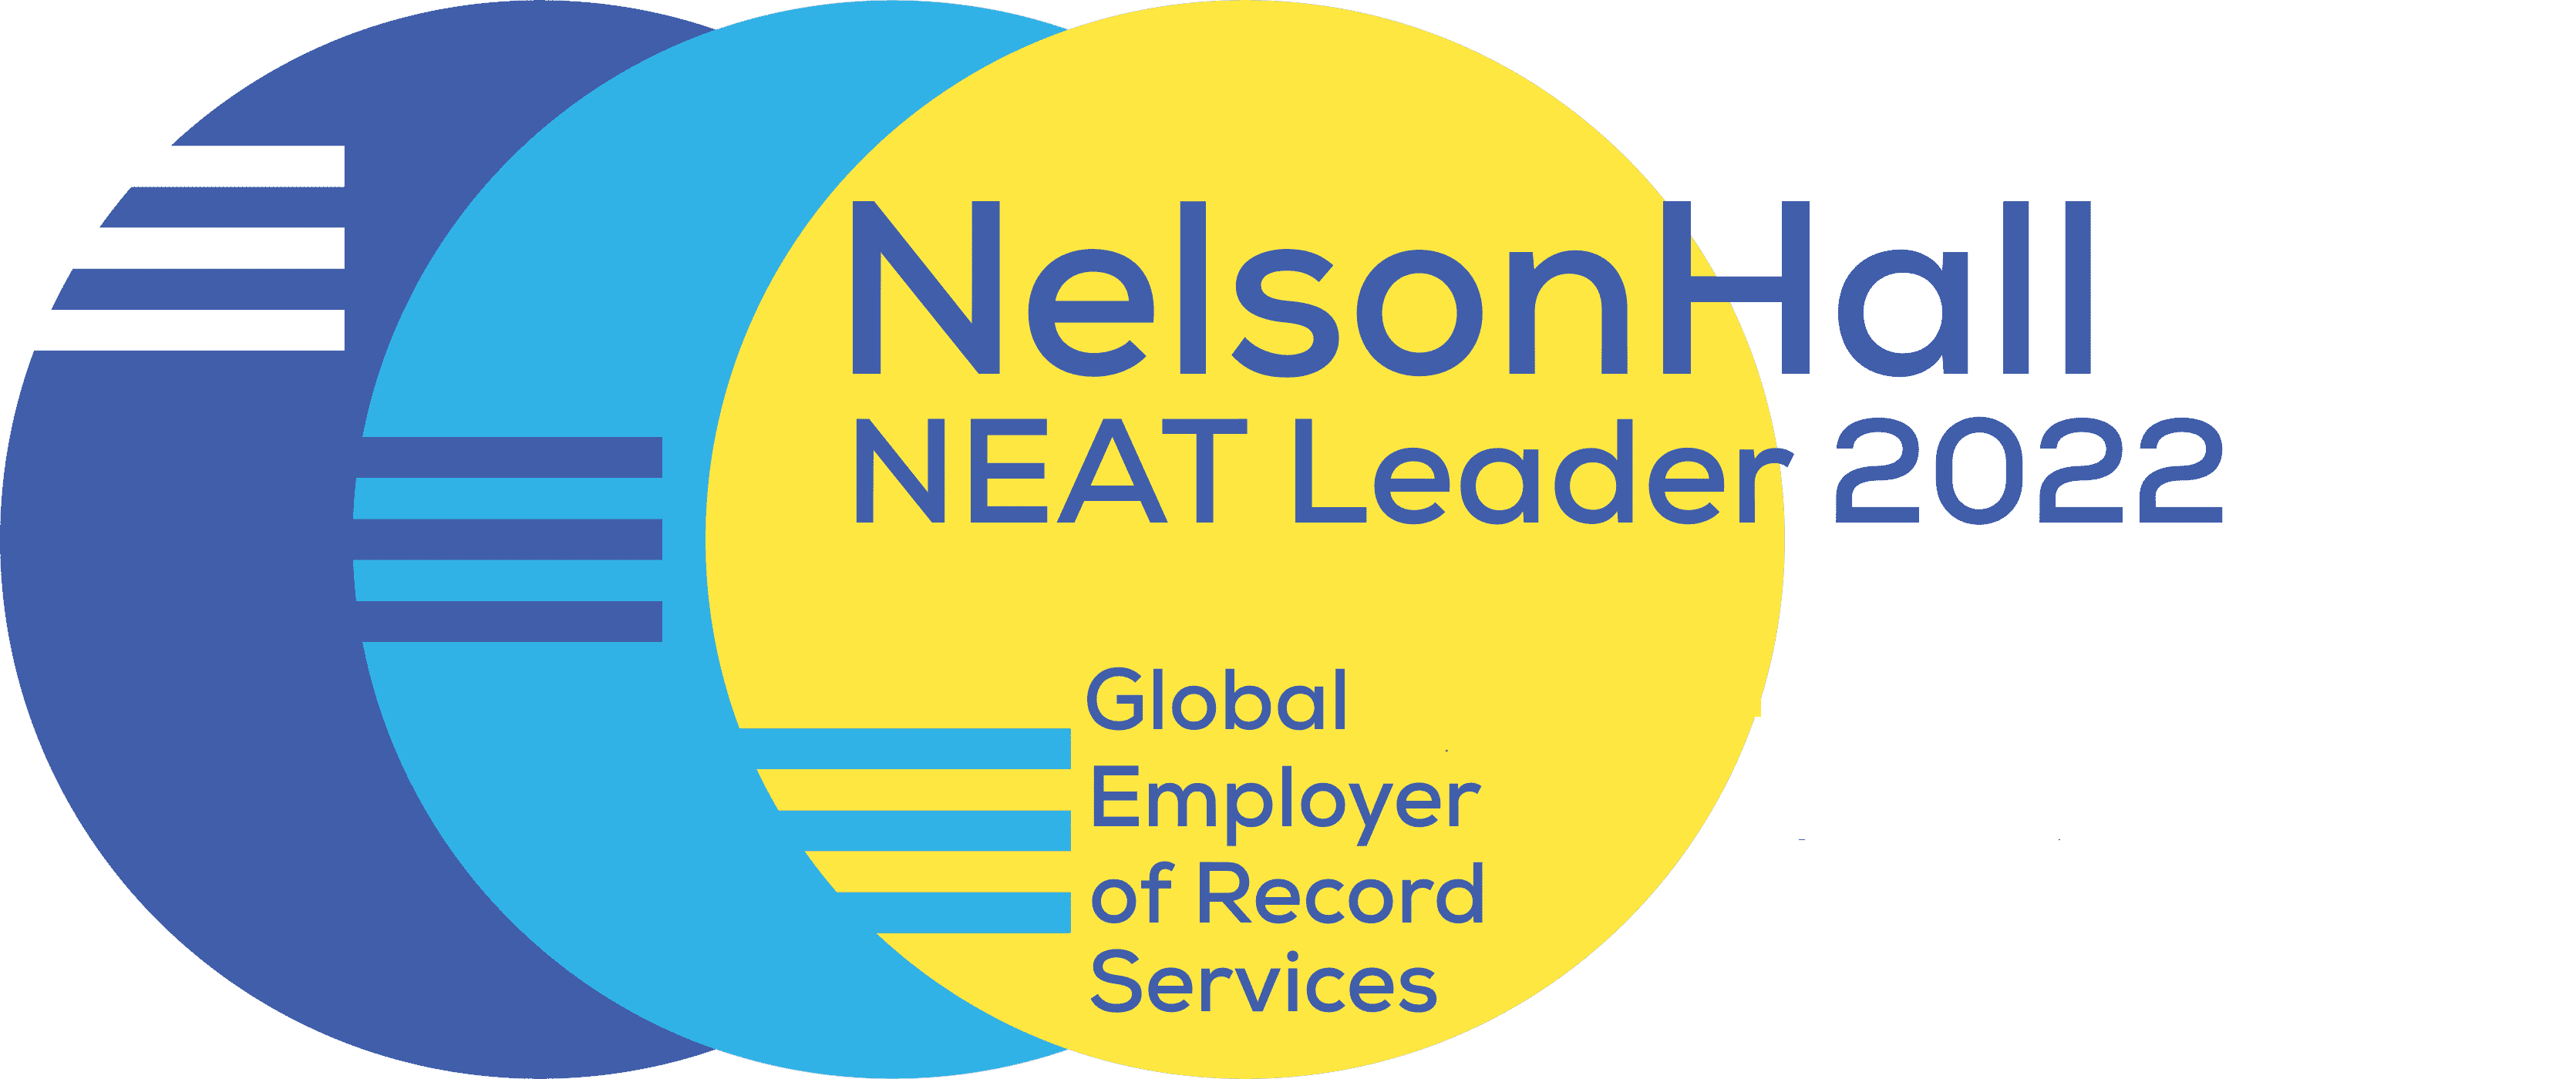 NelsonHall - Transformatie door inzichten